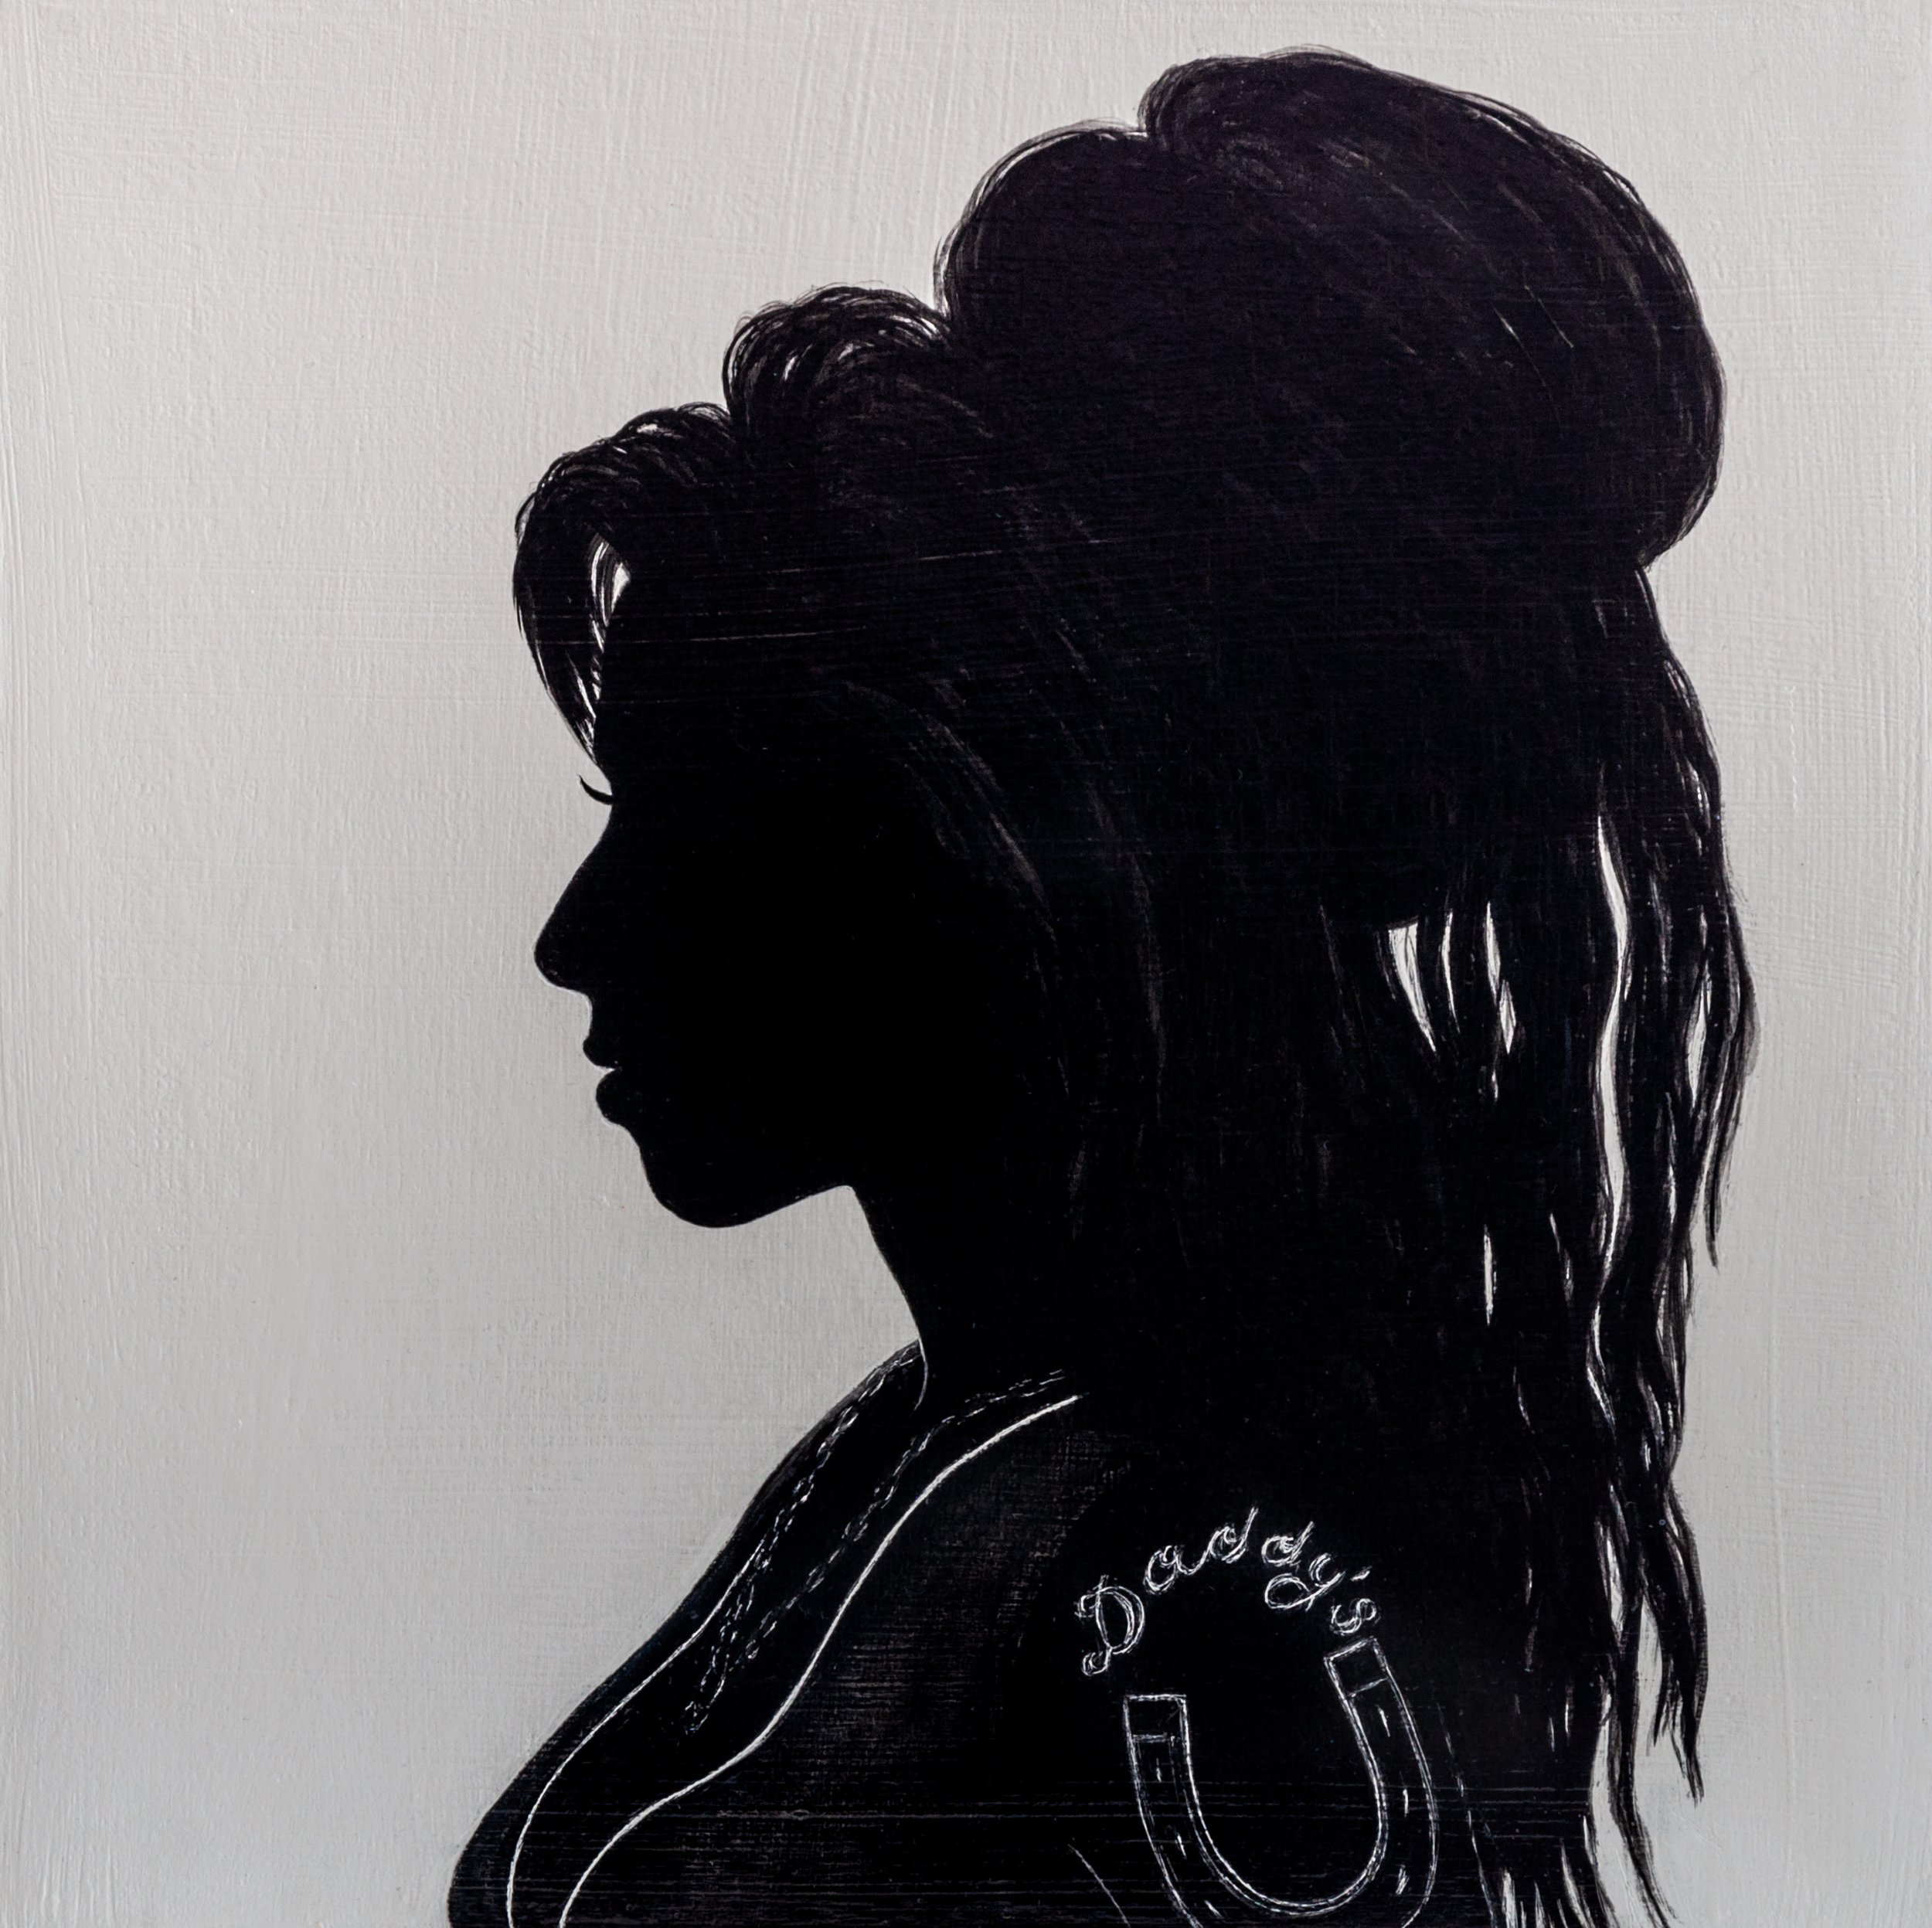 Amy Winehouse, Singer